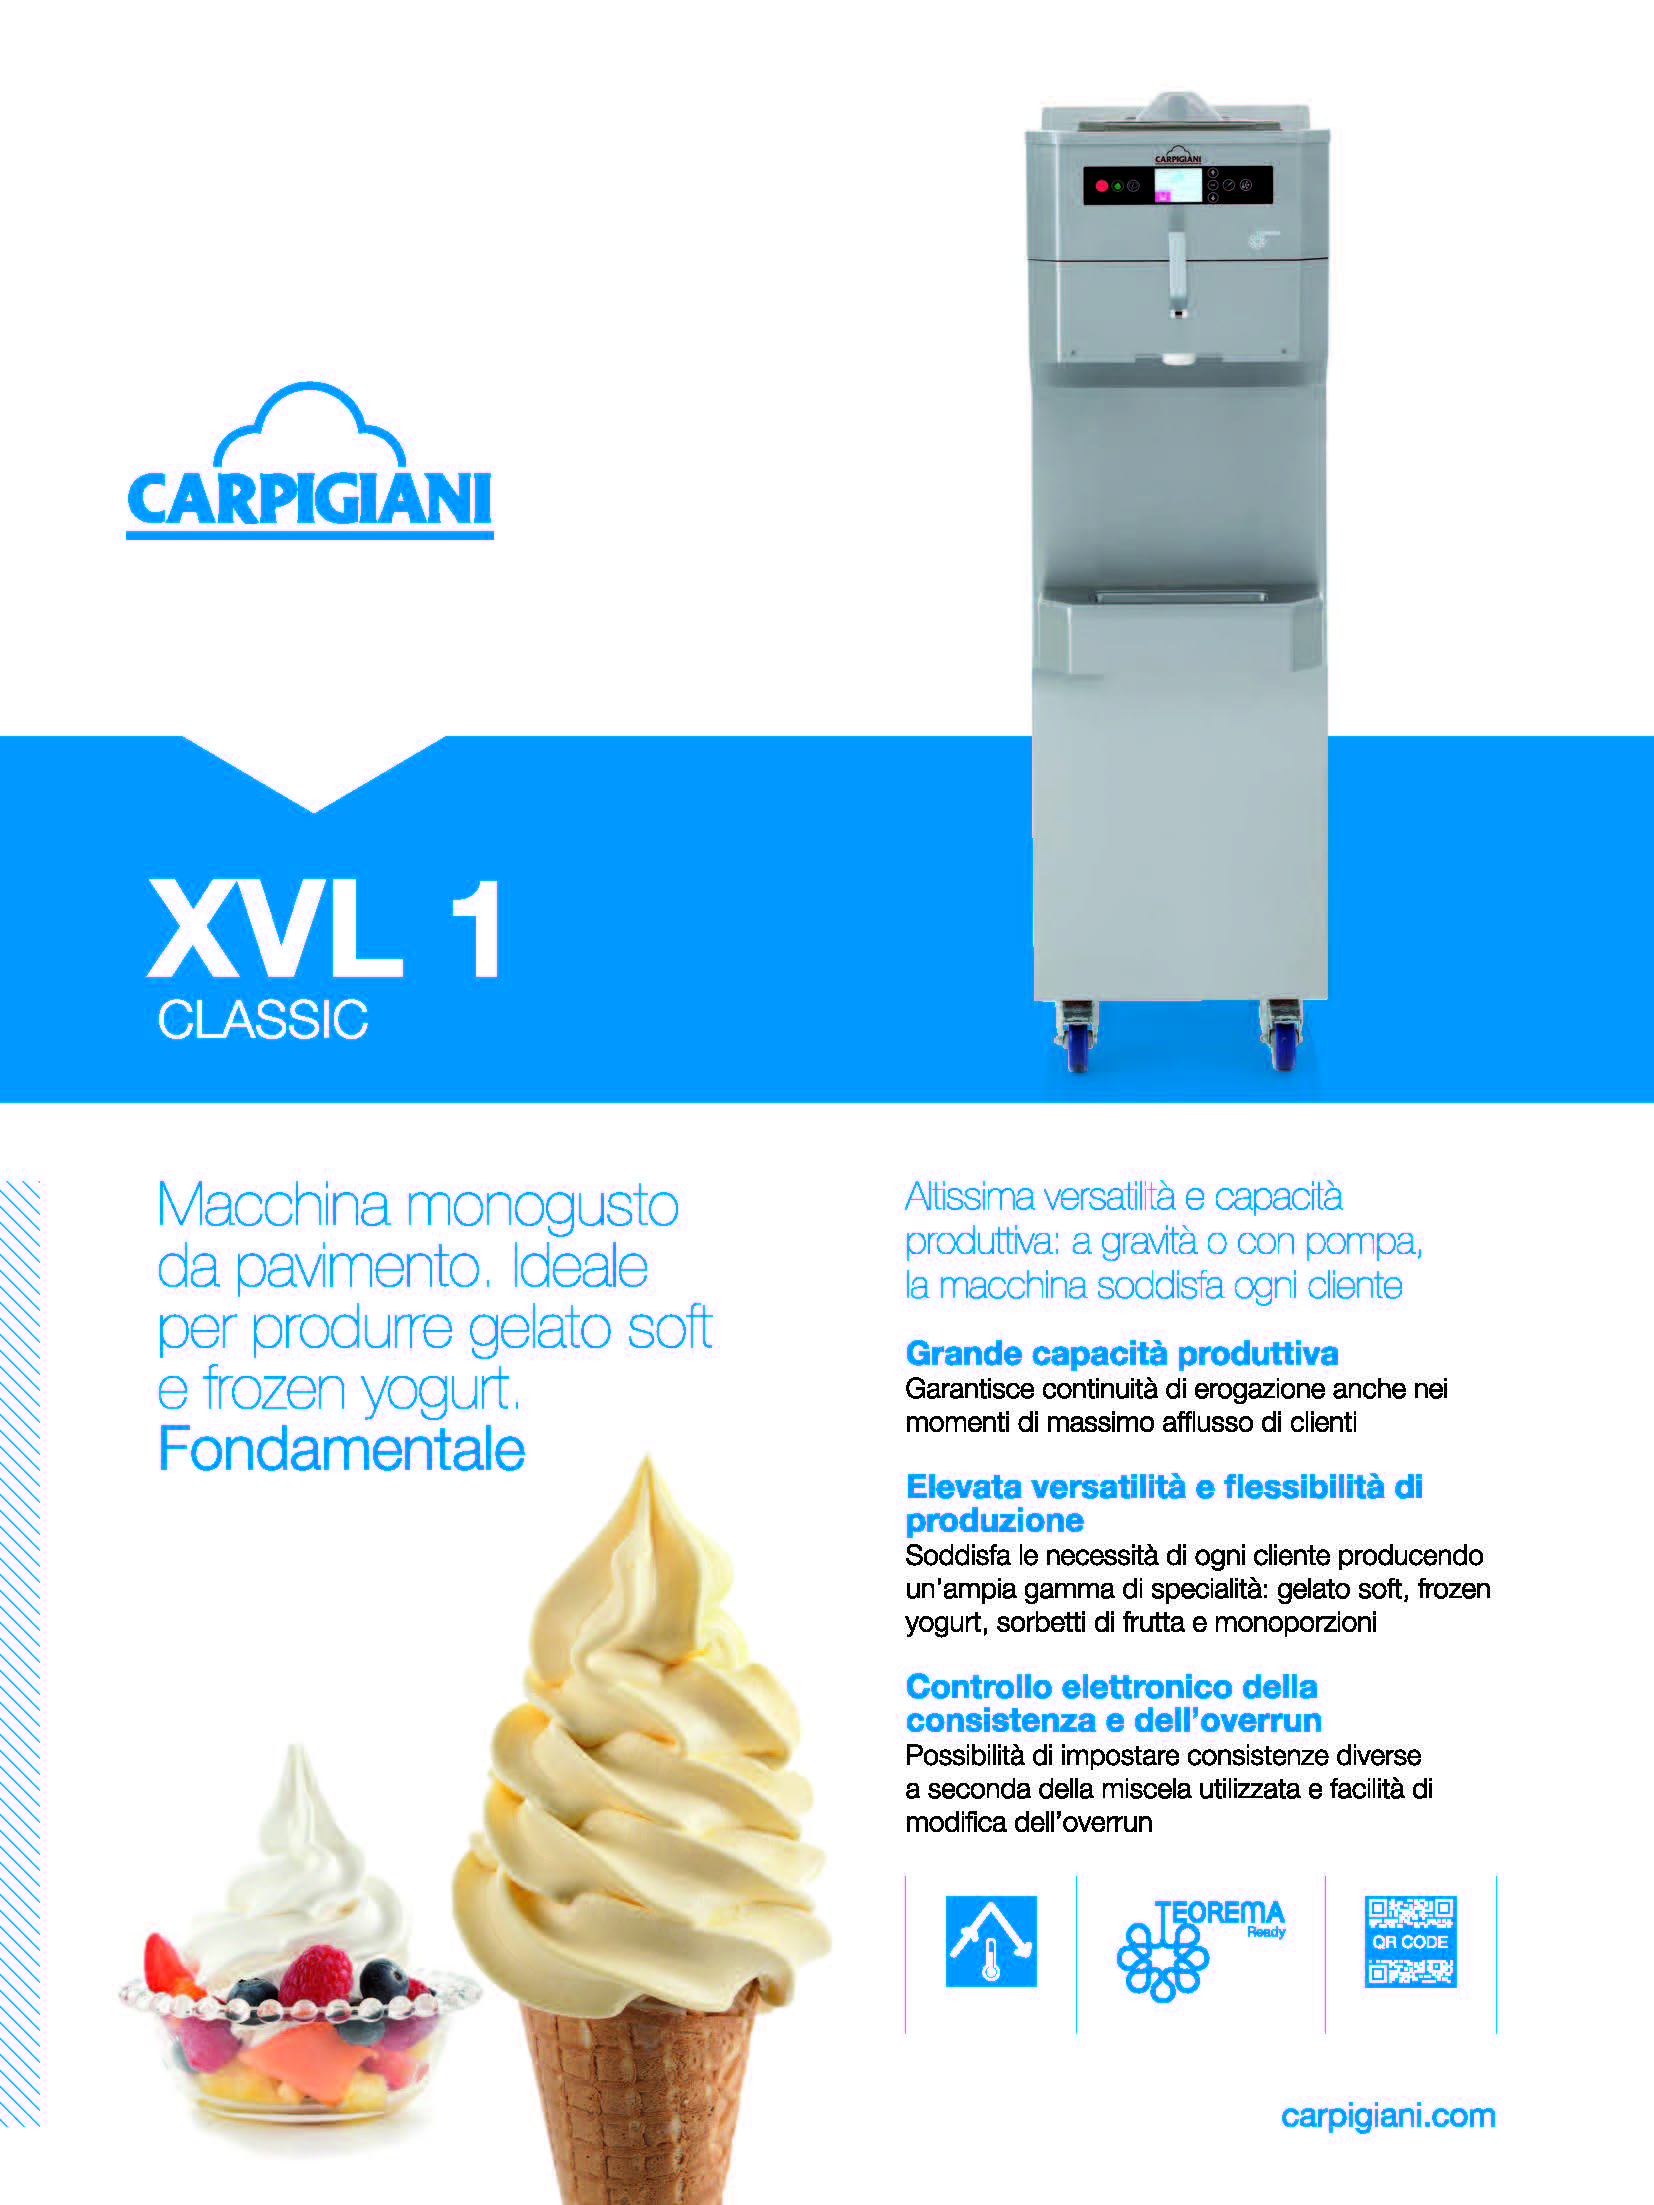 Carpigiani – XVL 1 CLASSIC